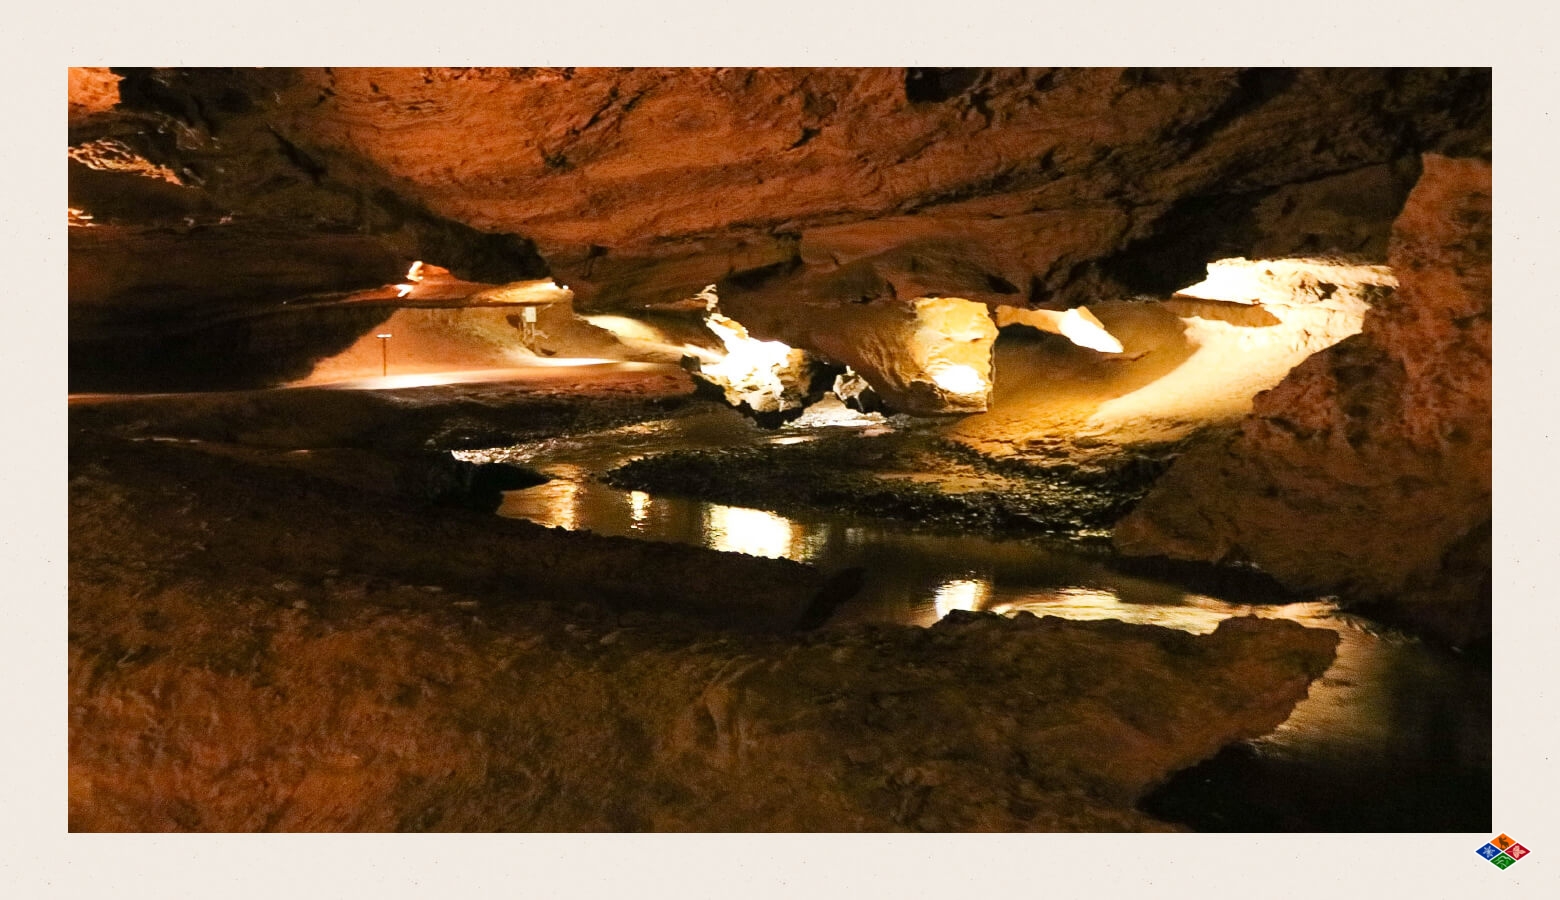 Tuckaleechee Caverns near Wears Valley, TN. 